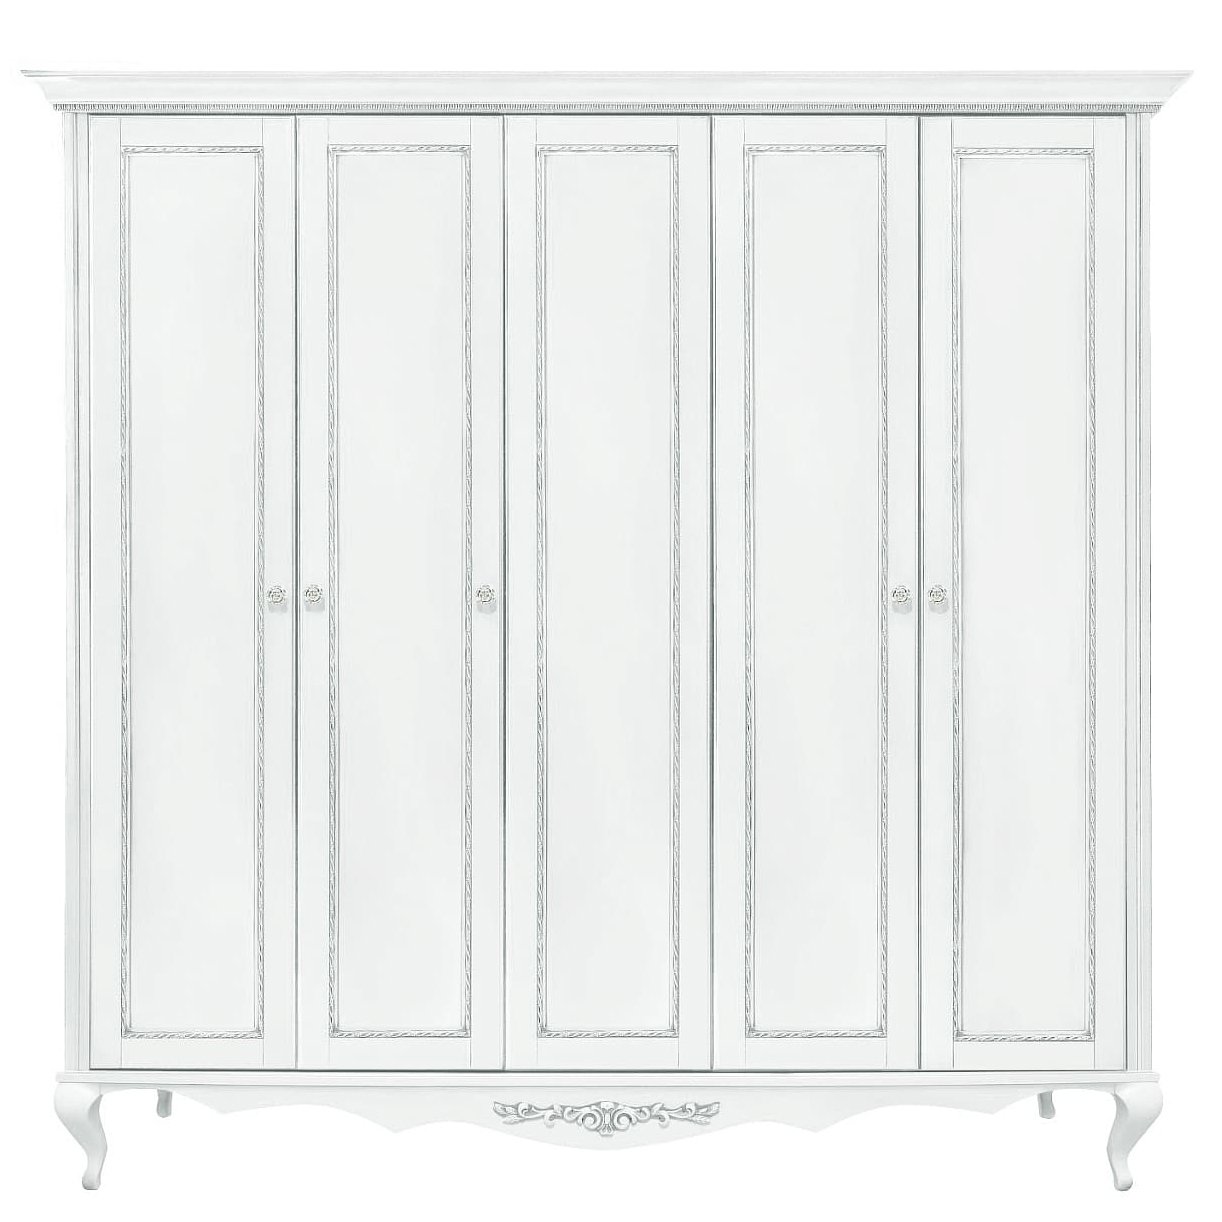 Шкаф платяной Timber Неаполь, 5-ти дверный 249x65x227 см, цвет: белый с серебром (Т-525Д/BA)Т-525Д